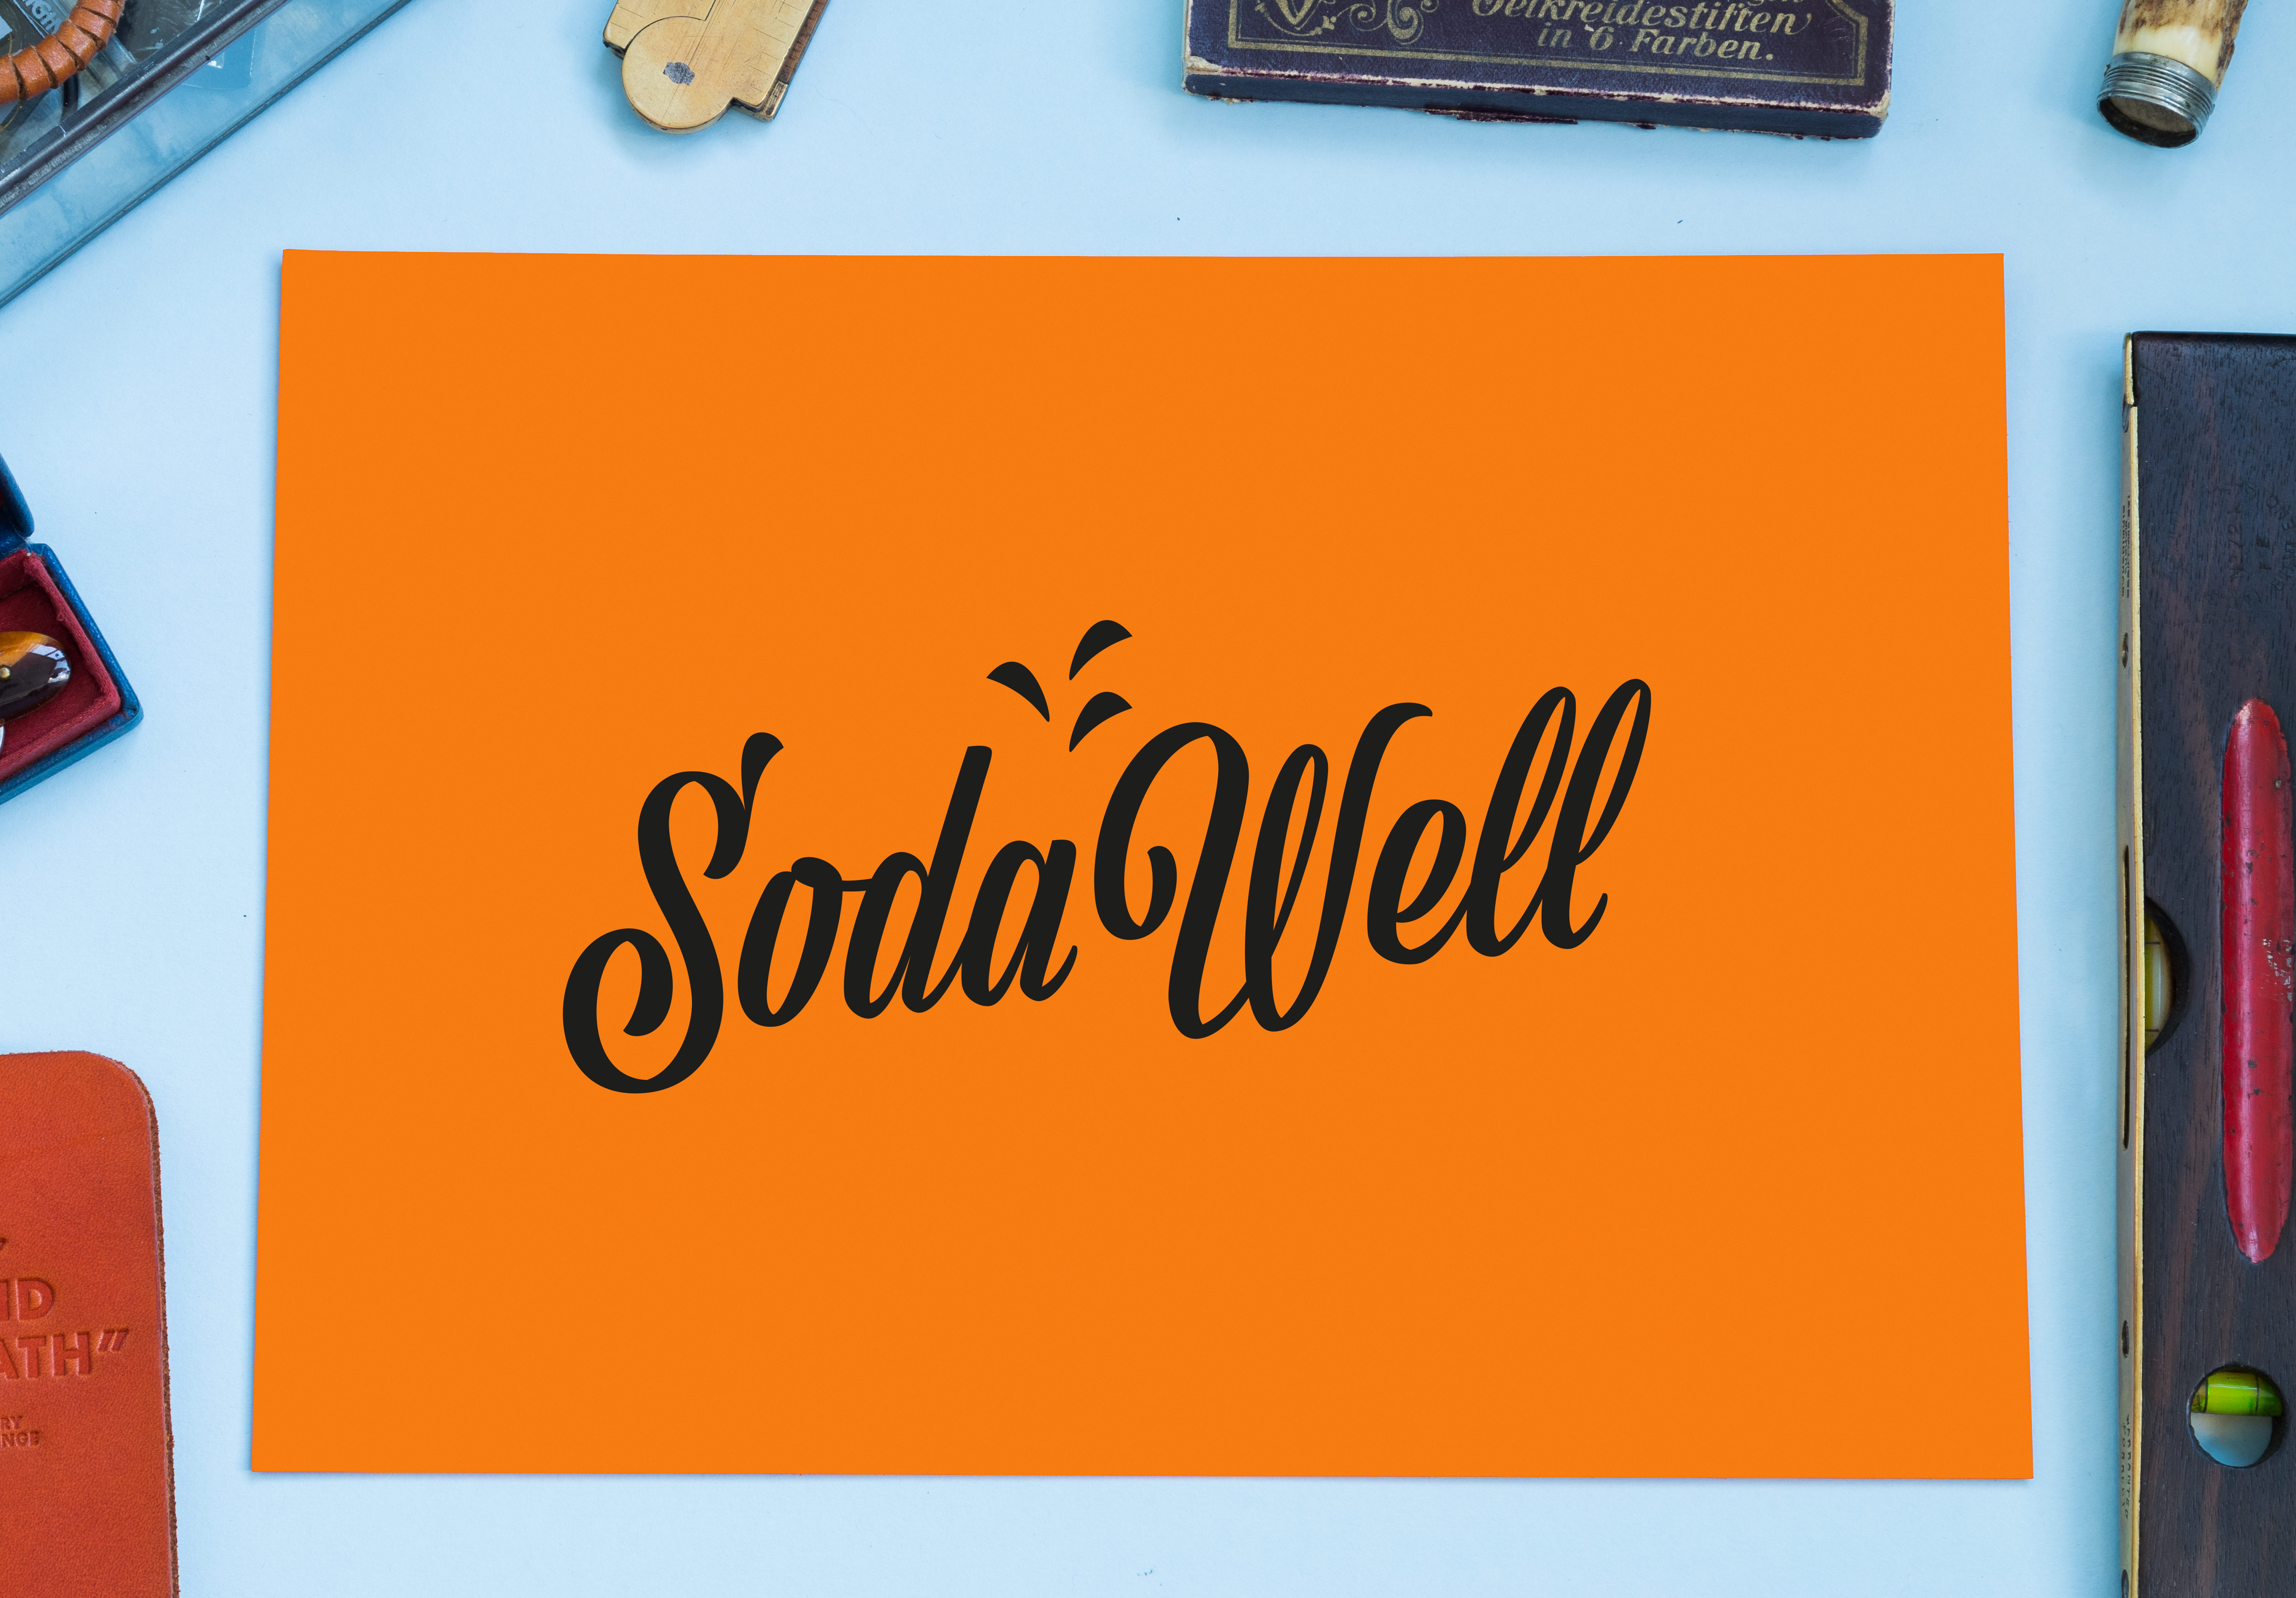 logo sodawell